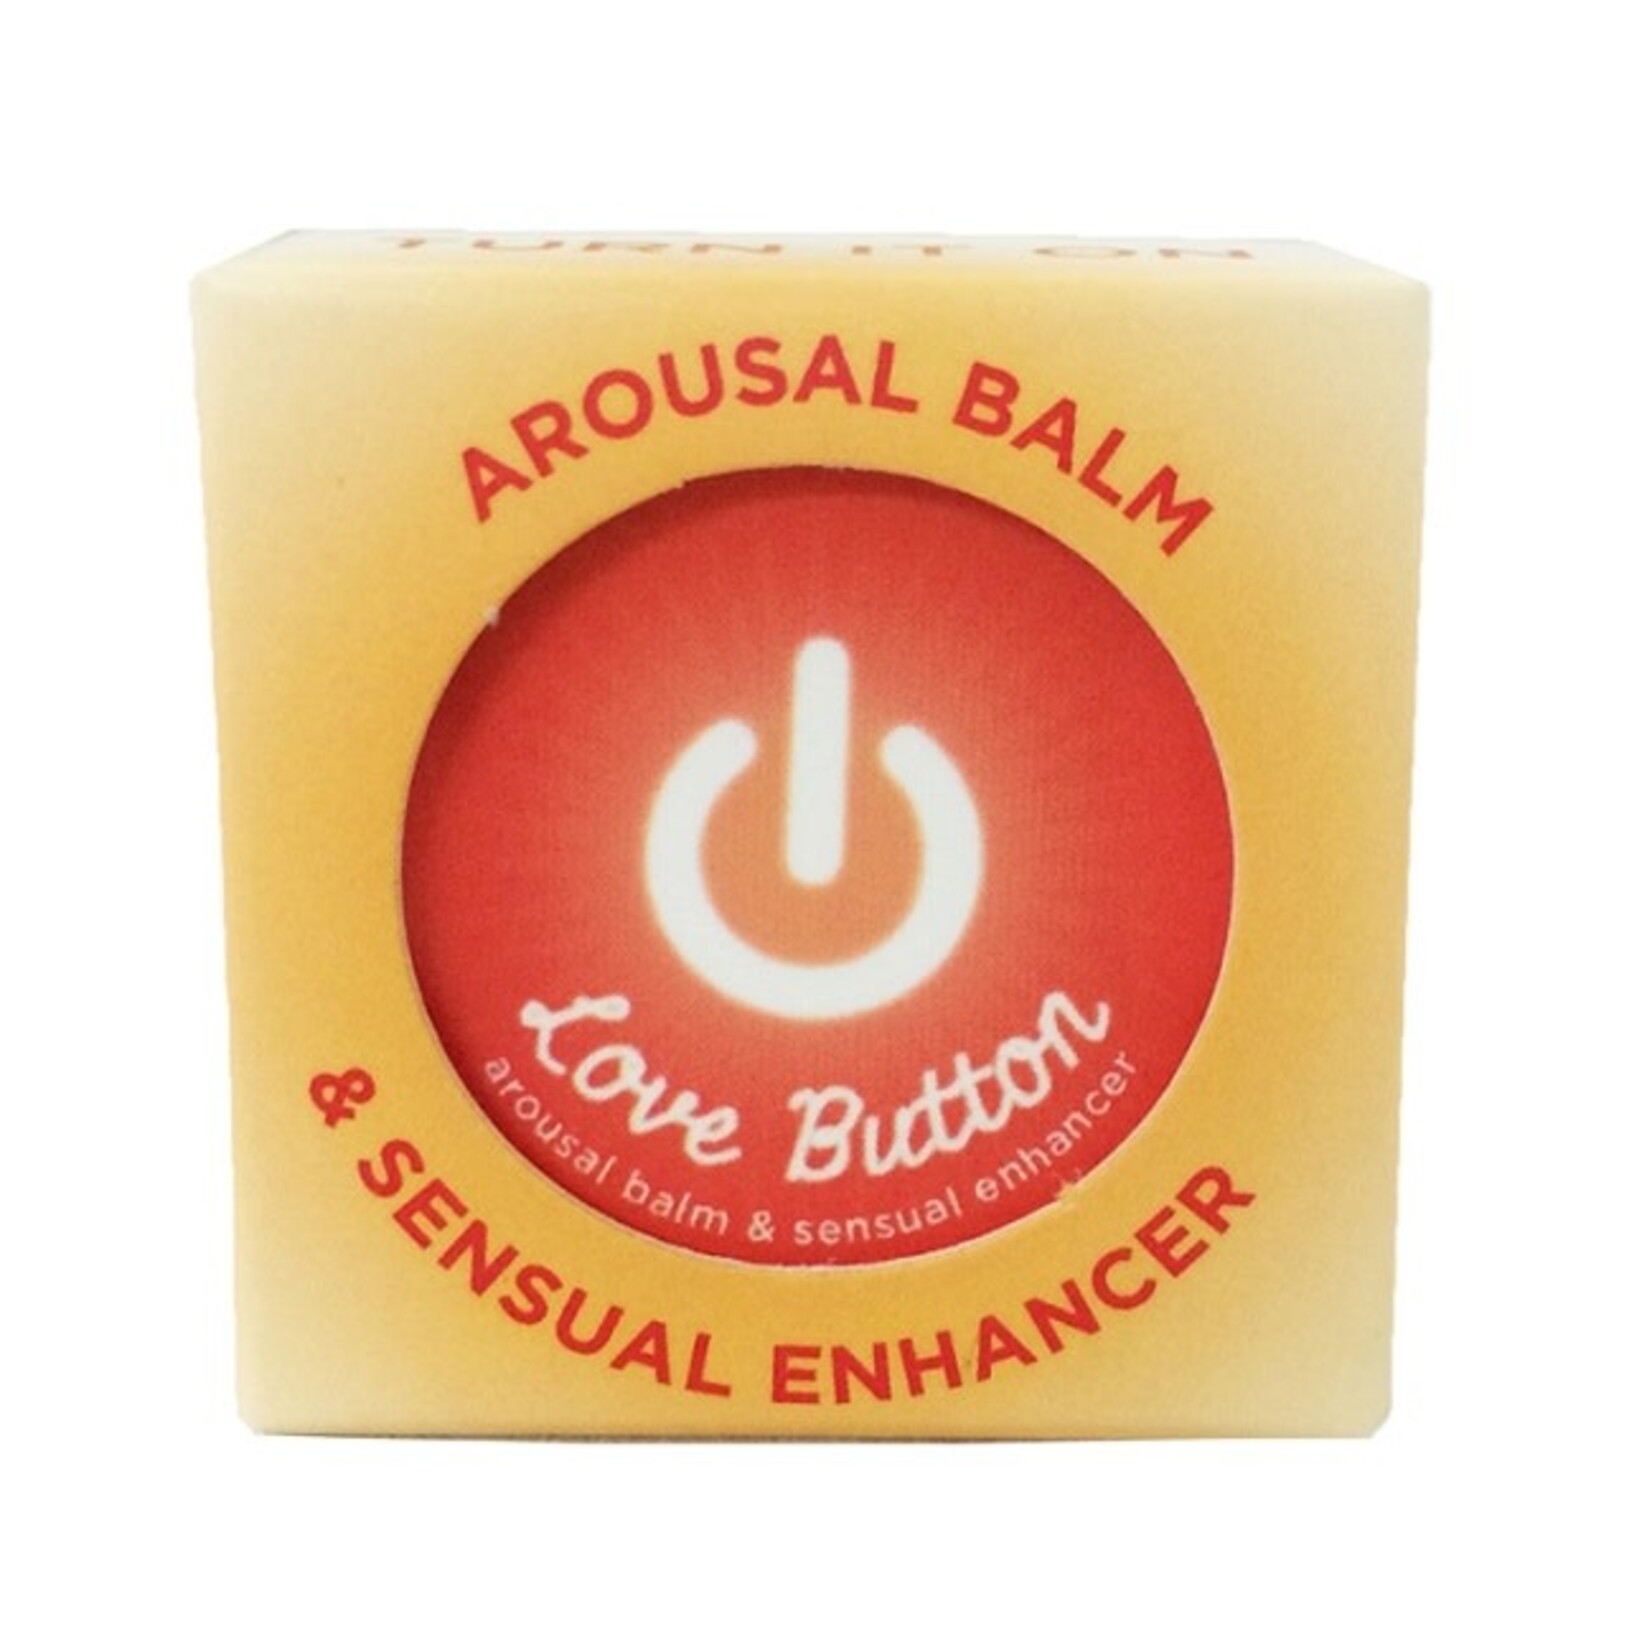 Earthly Body Love Button Arousal Balm & Sensual Enhancer 0.45oz